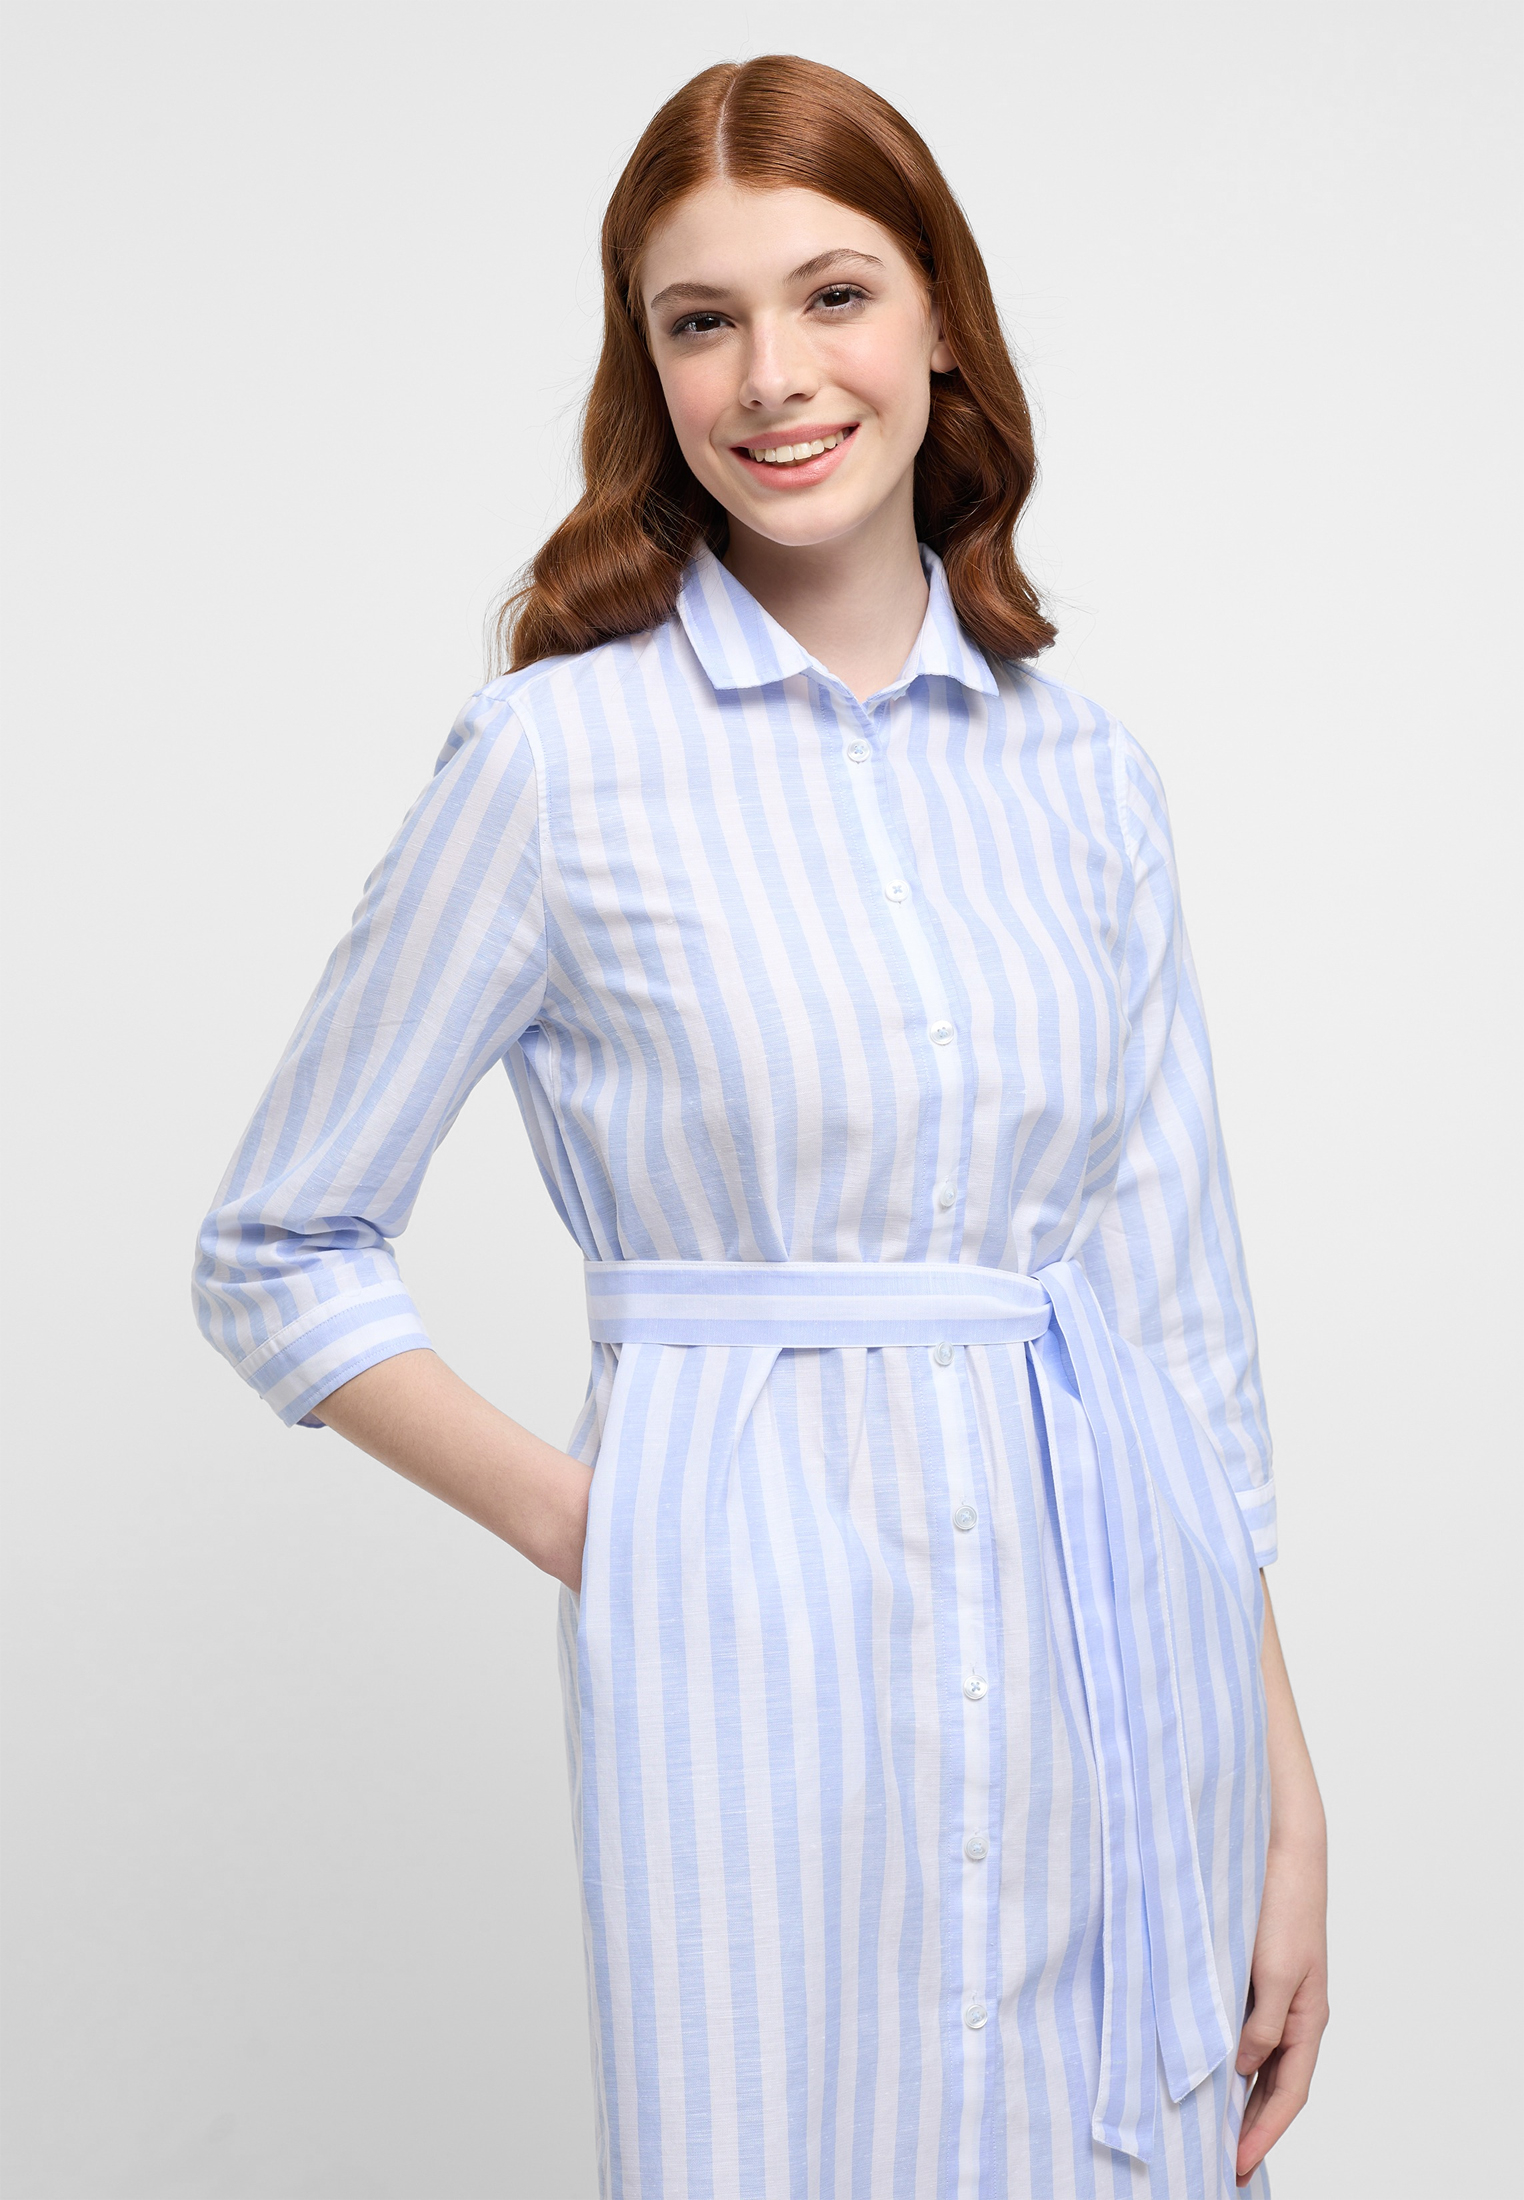 Hemdblusenkleid in light blue striped | light blue | 46 | 3/4 sleeves |  2DR00267-01-11-46-3/4